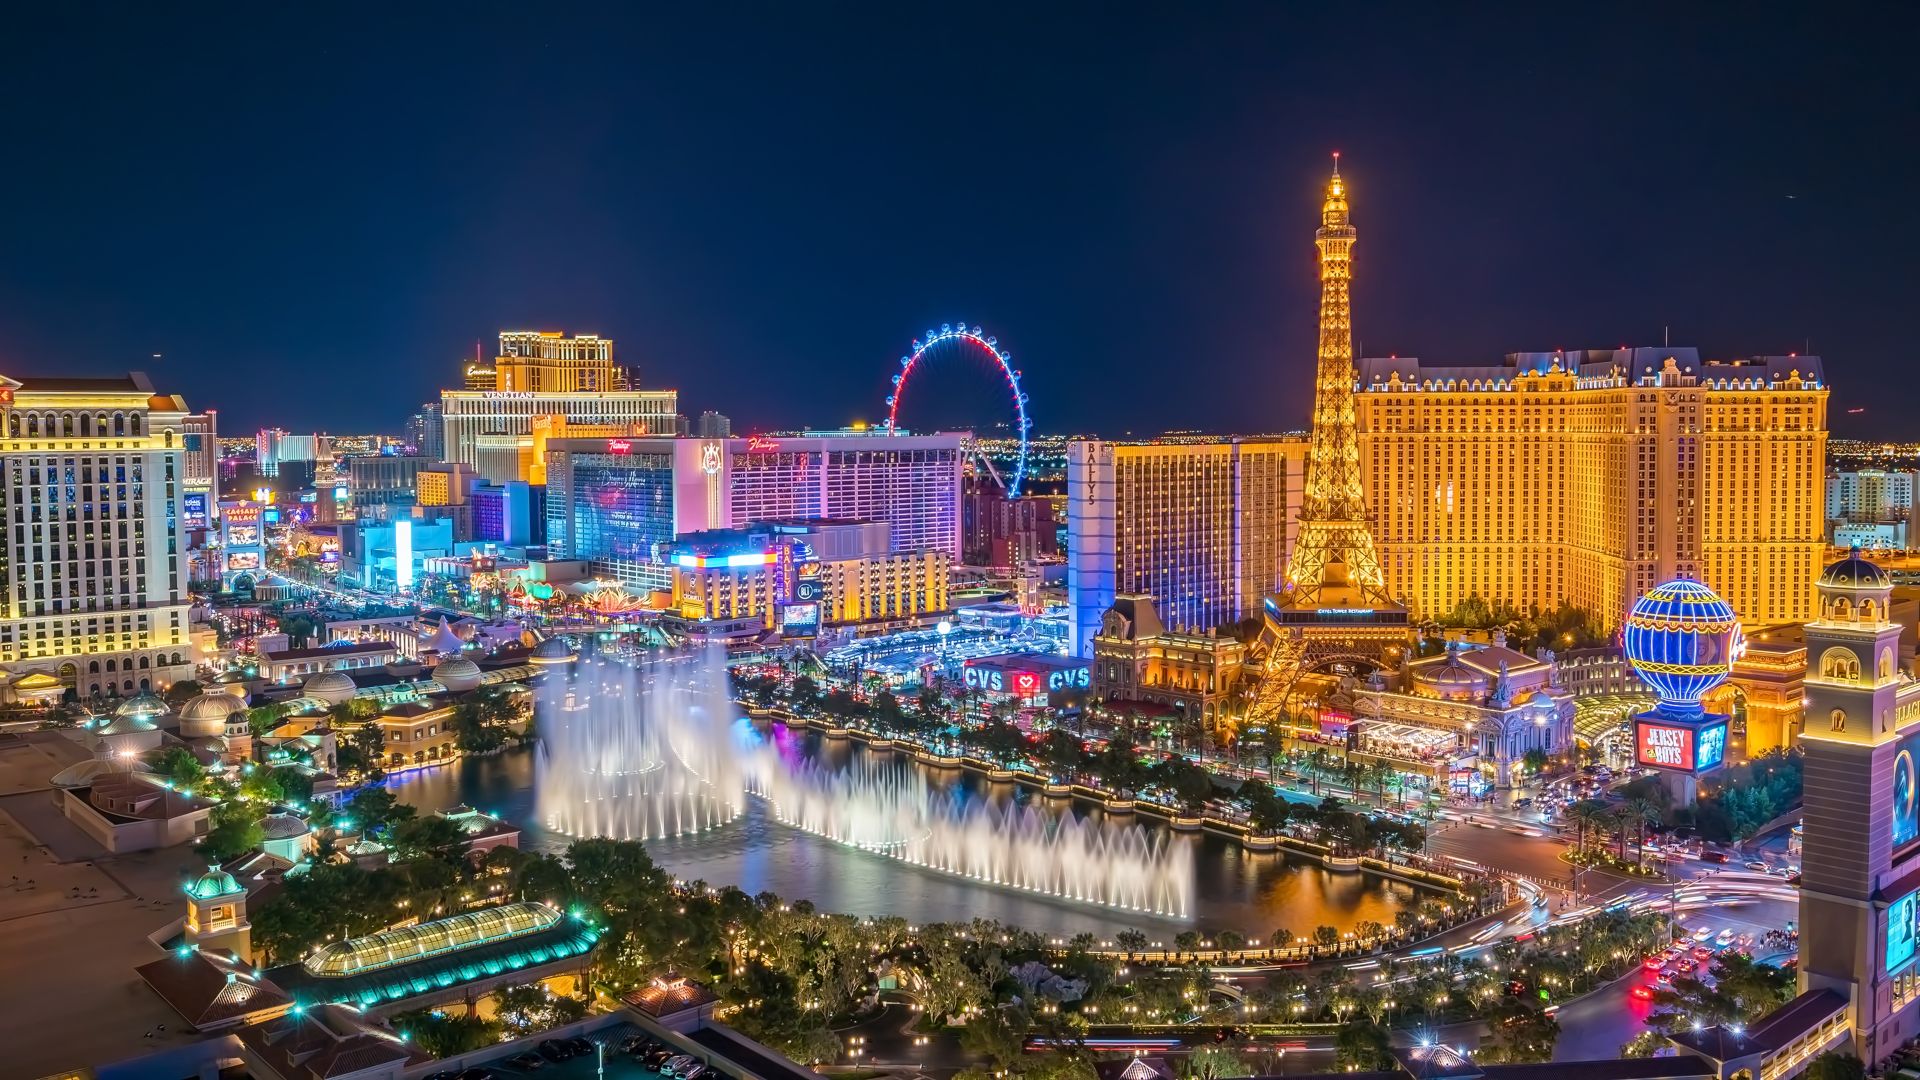 Panoramic view of the Las Vegas Strip